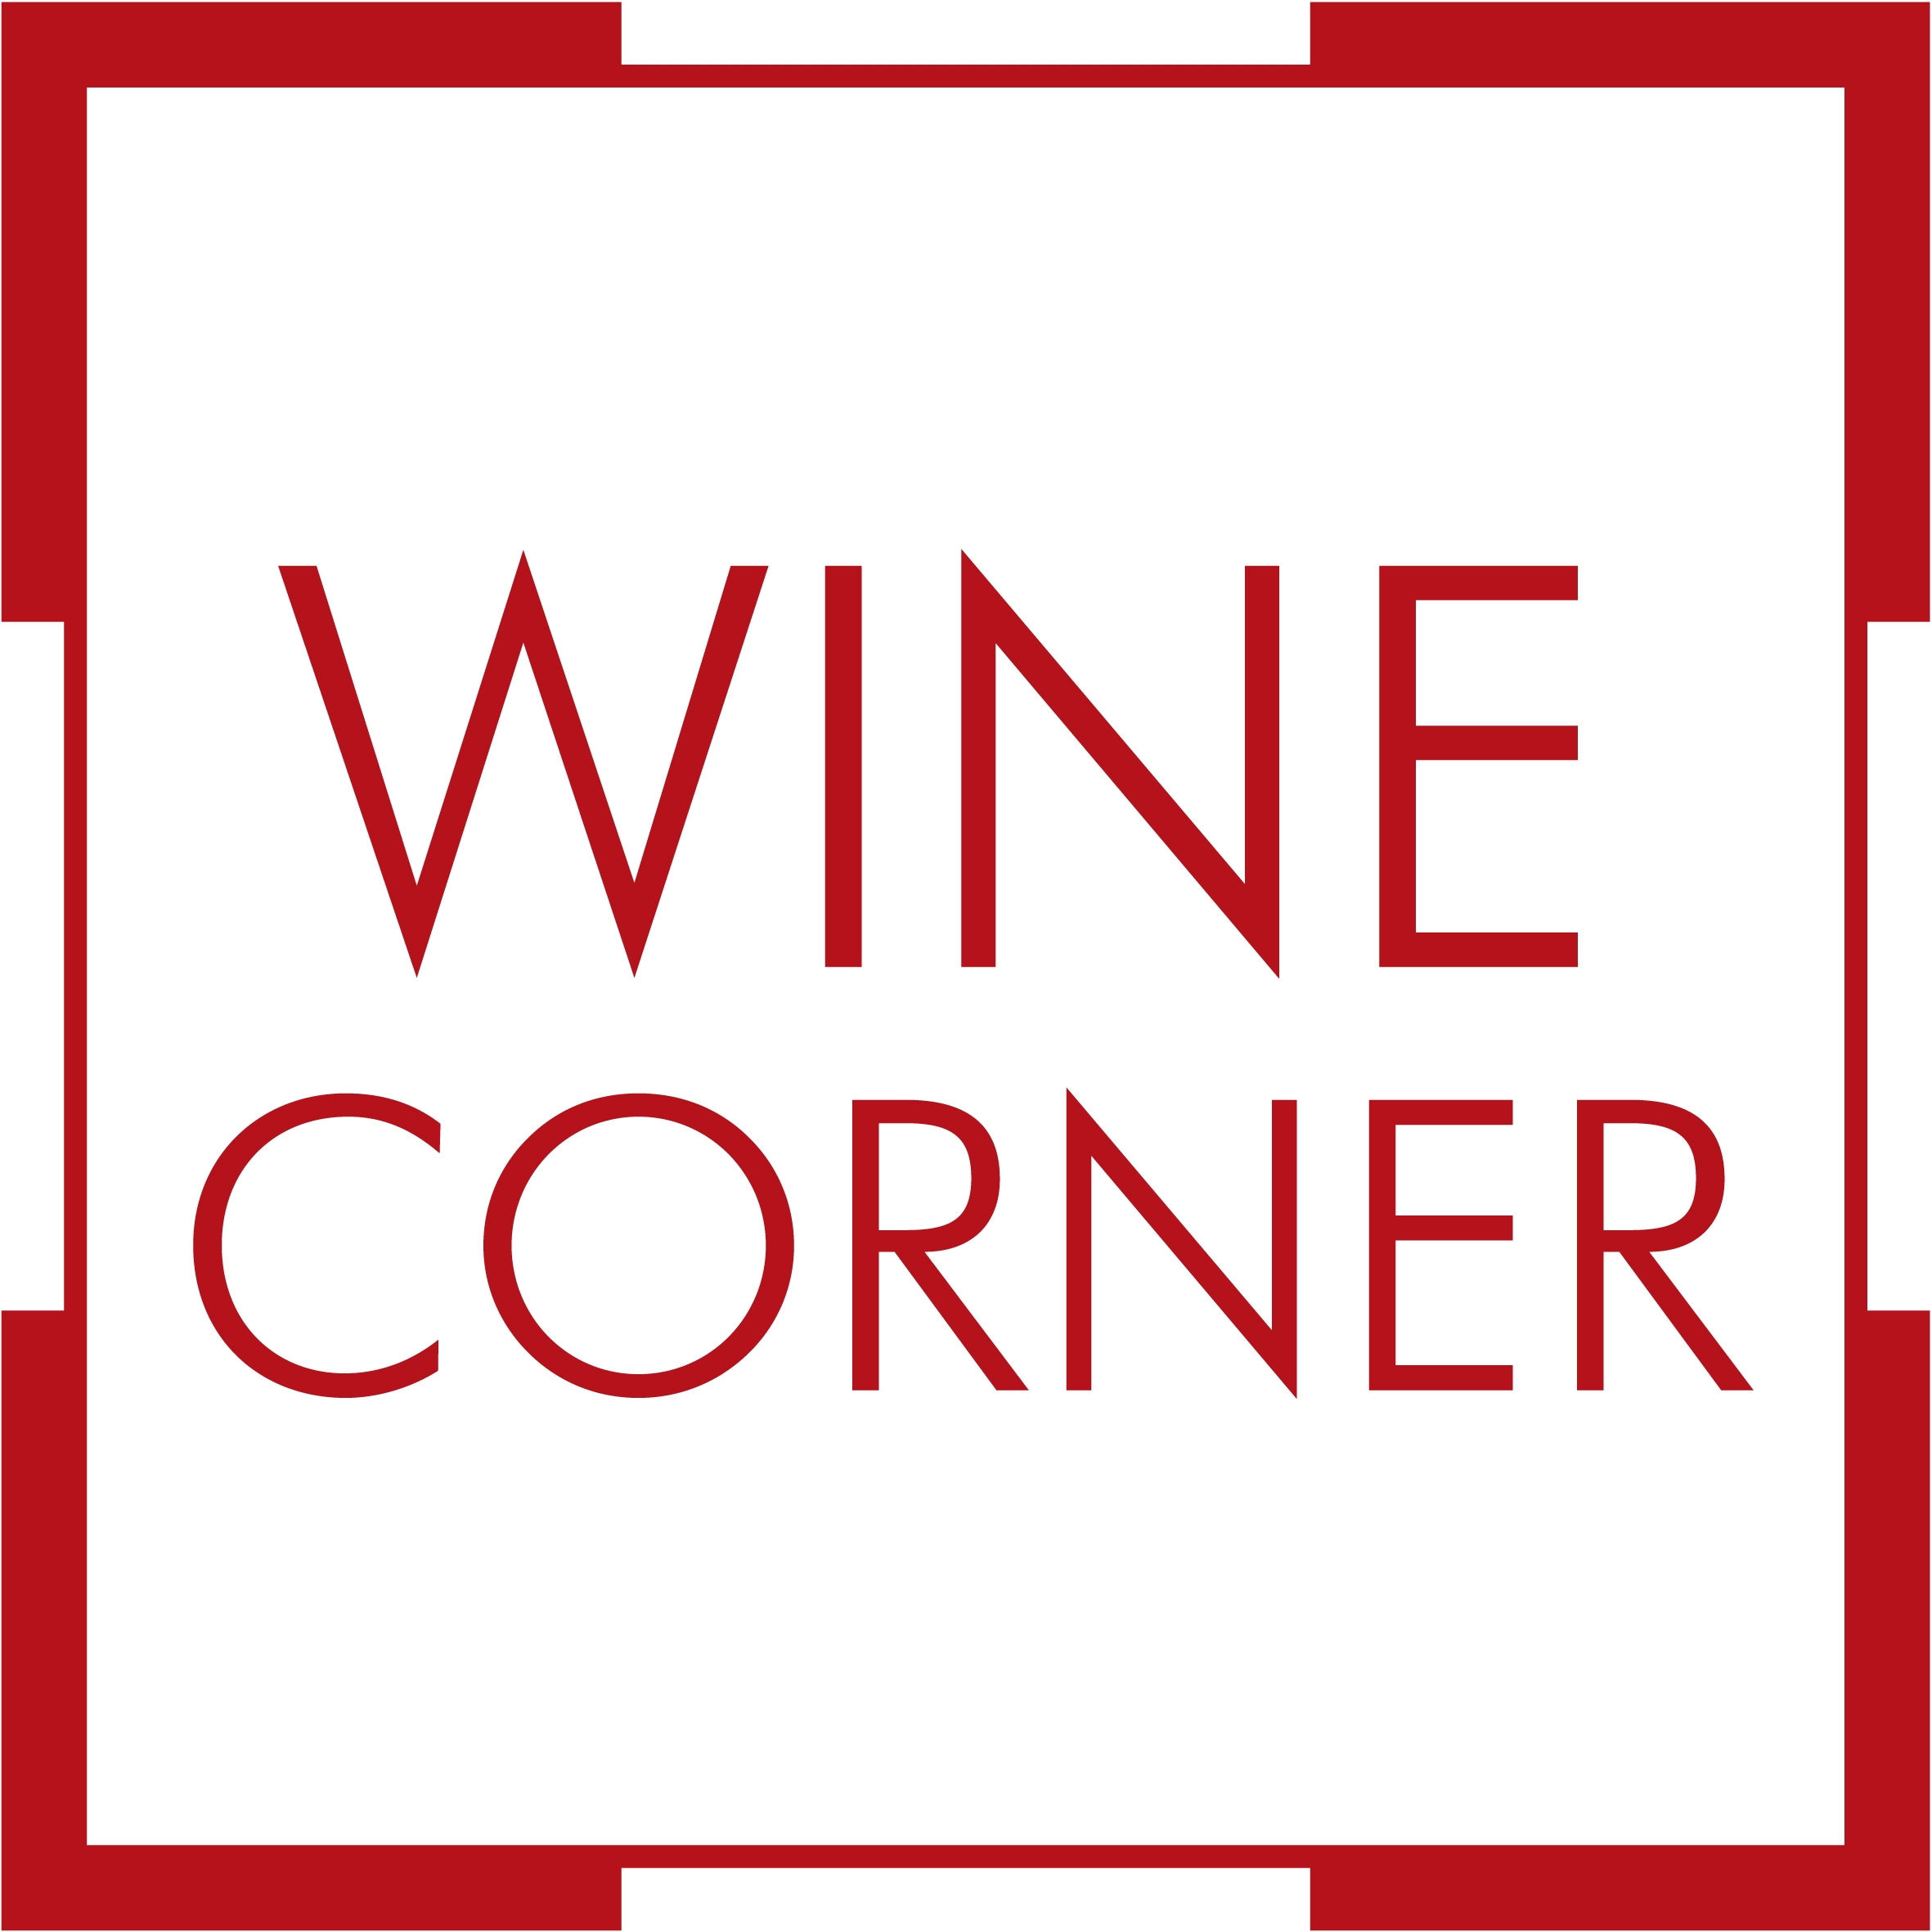 Wine Corner Ltd